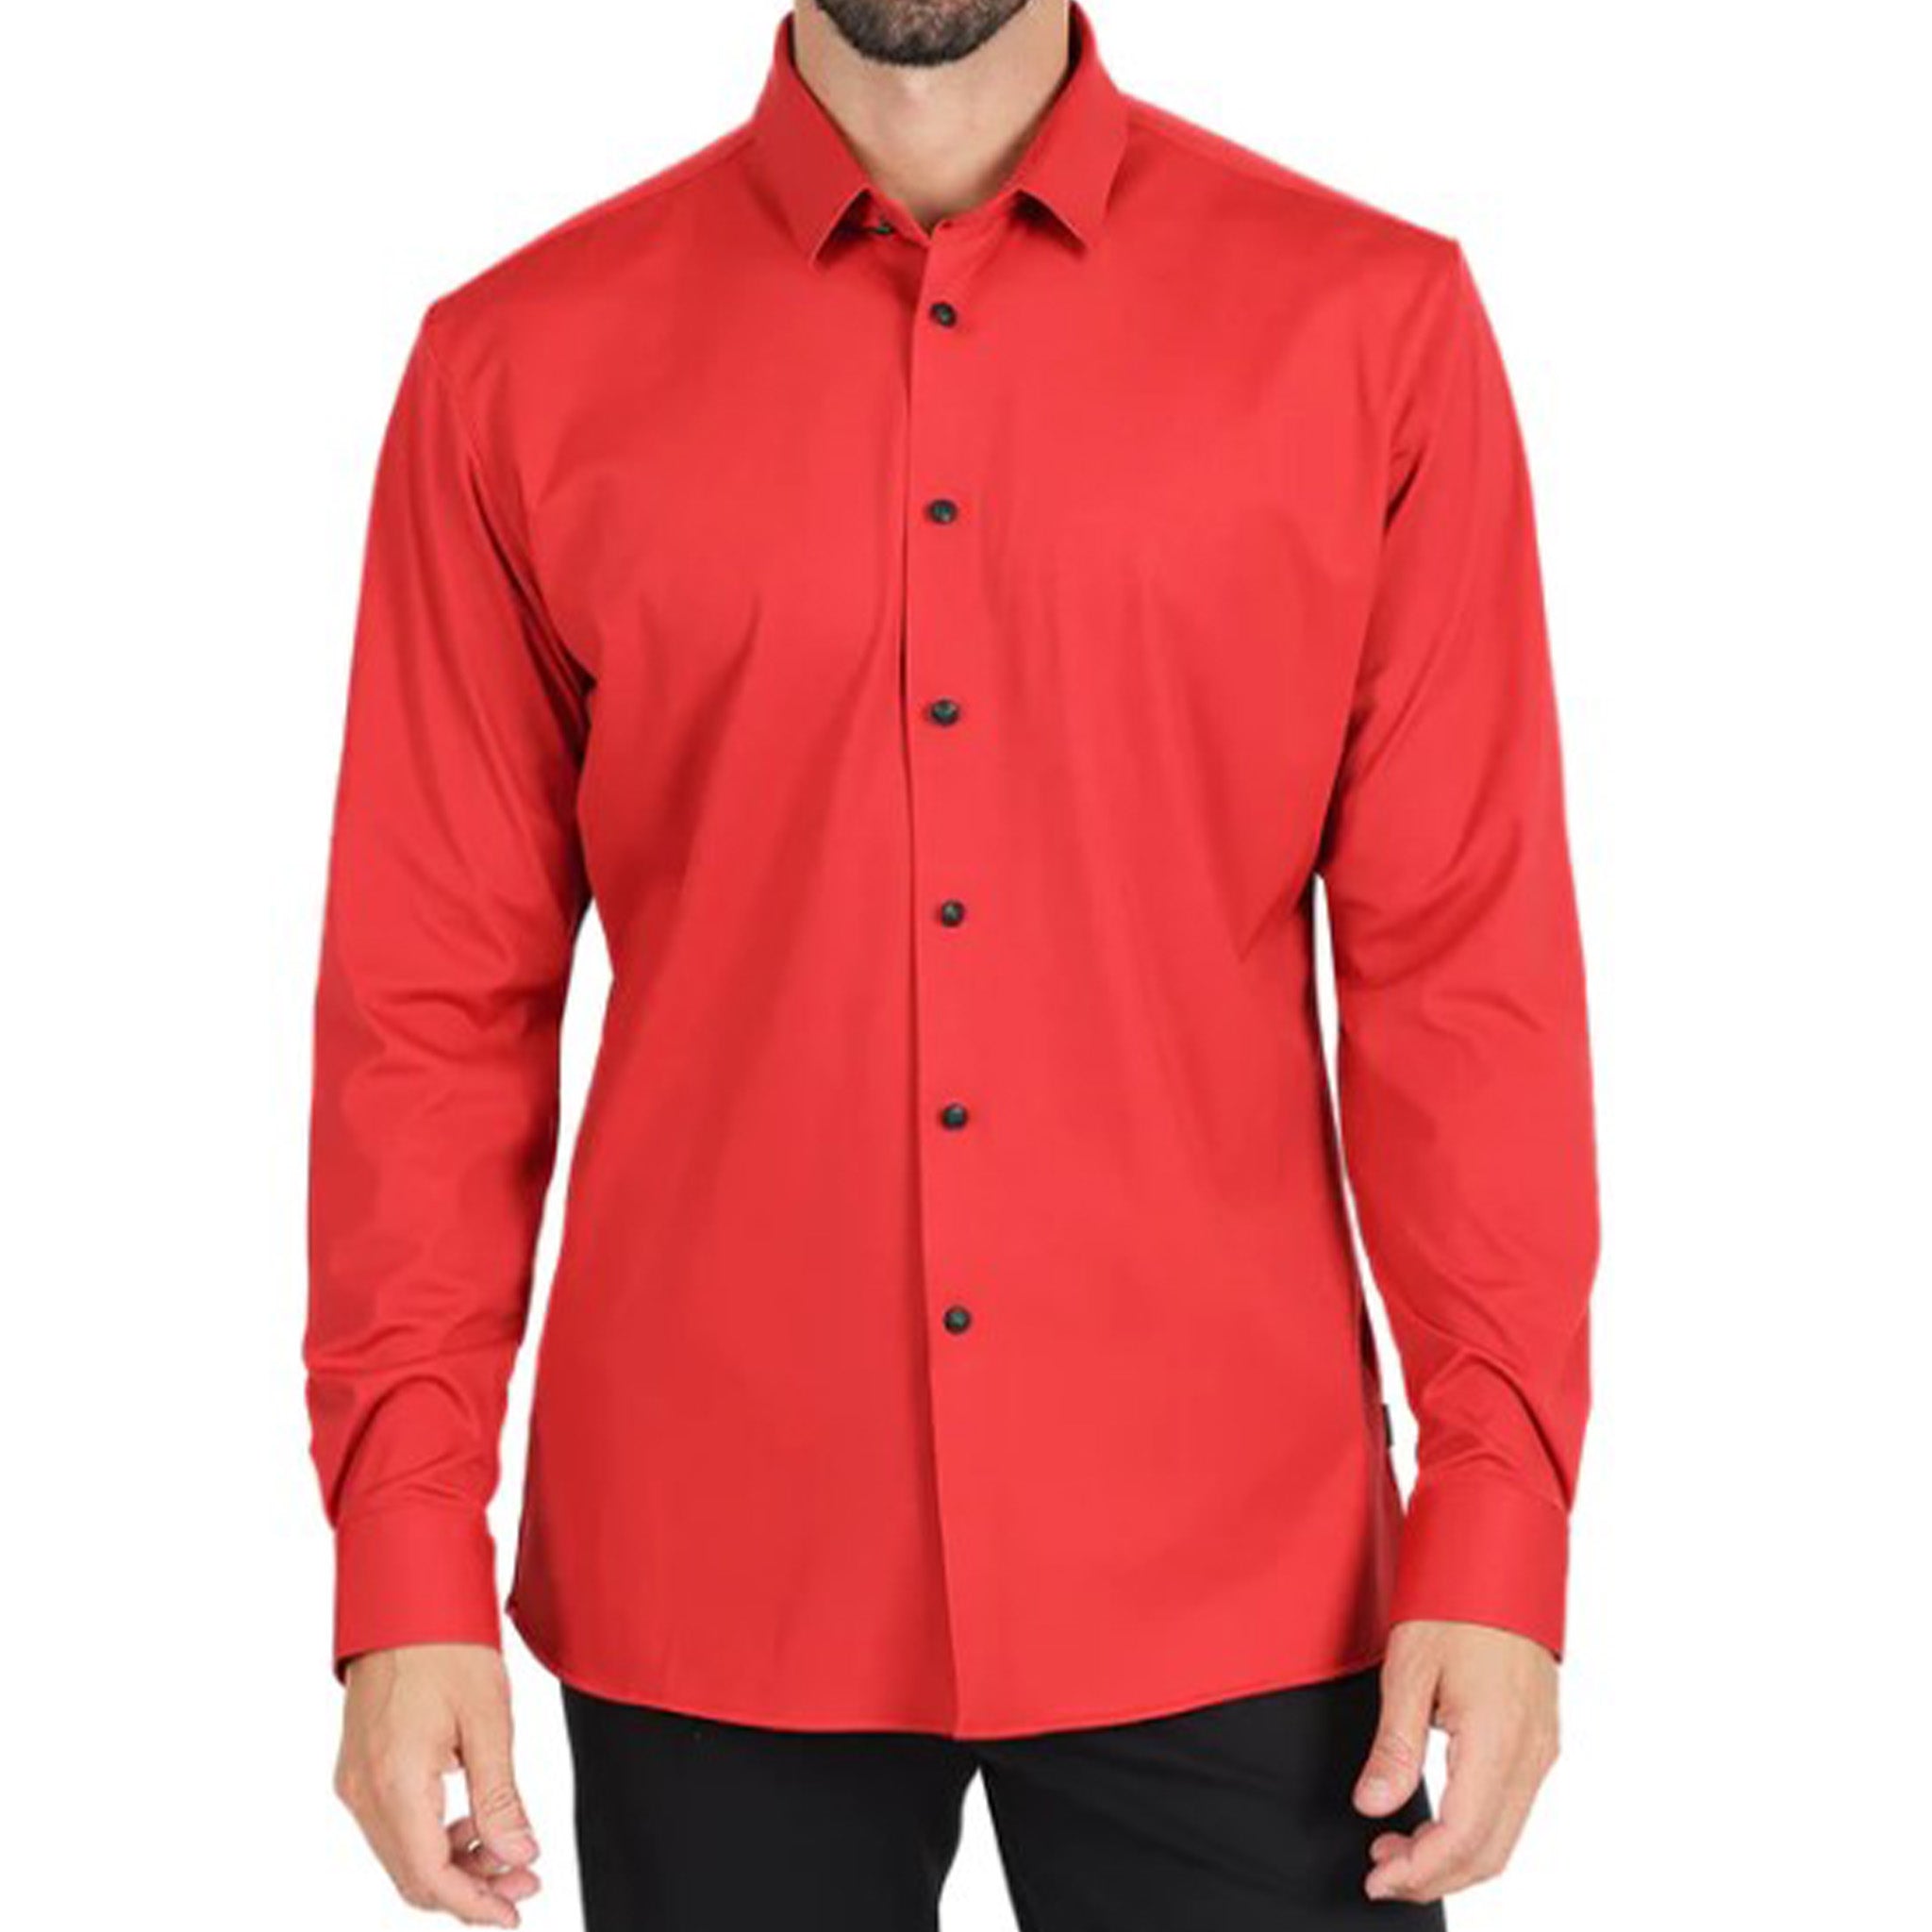 Red Slim Stretch Fashion Shirt